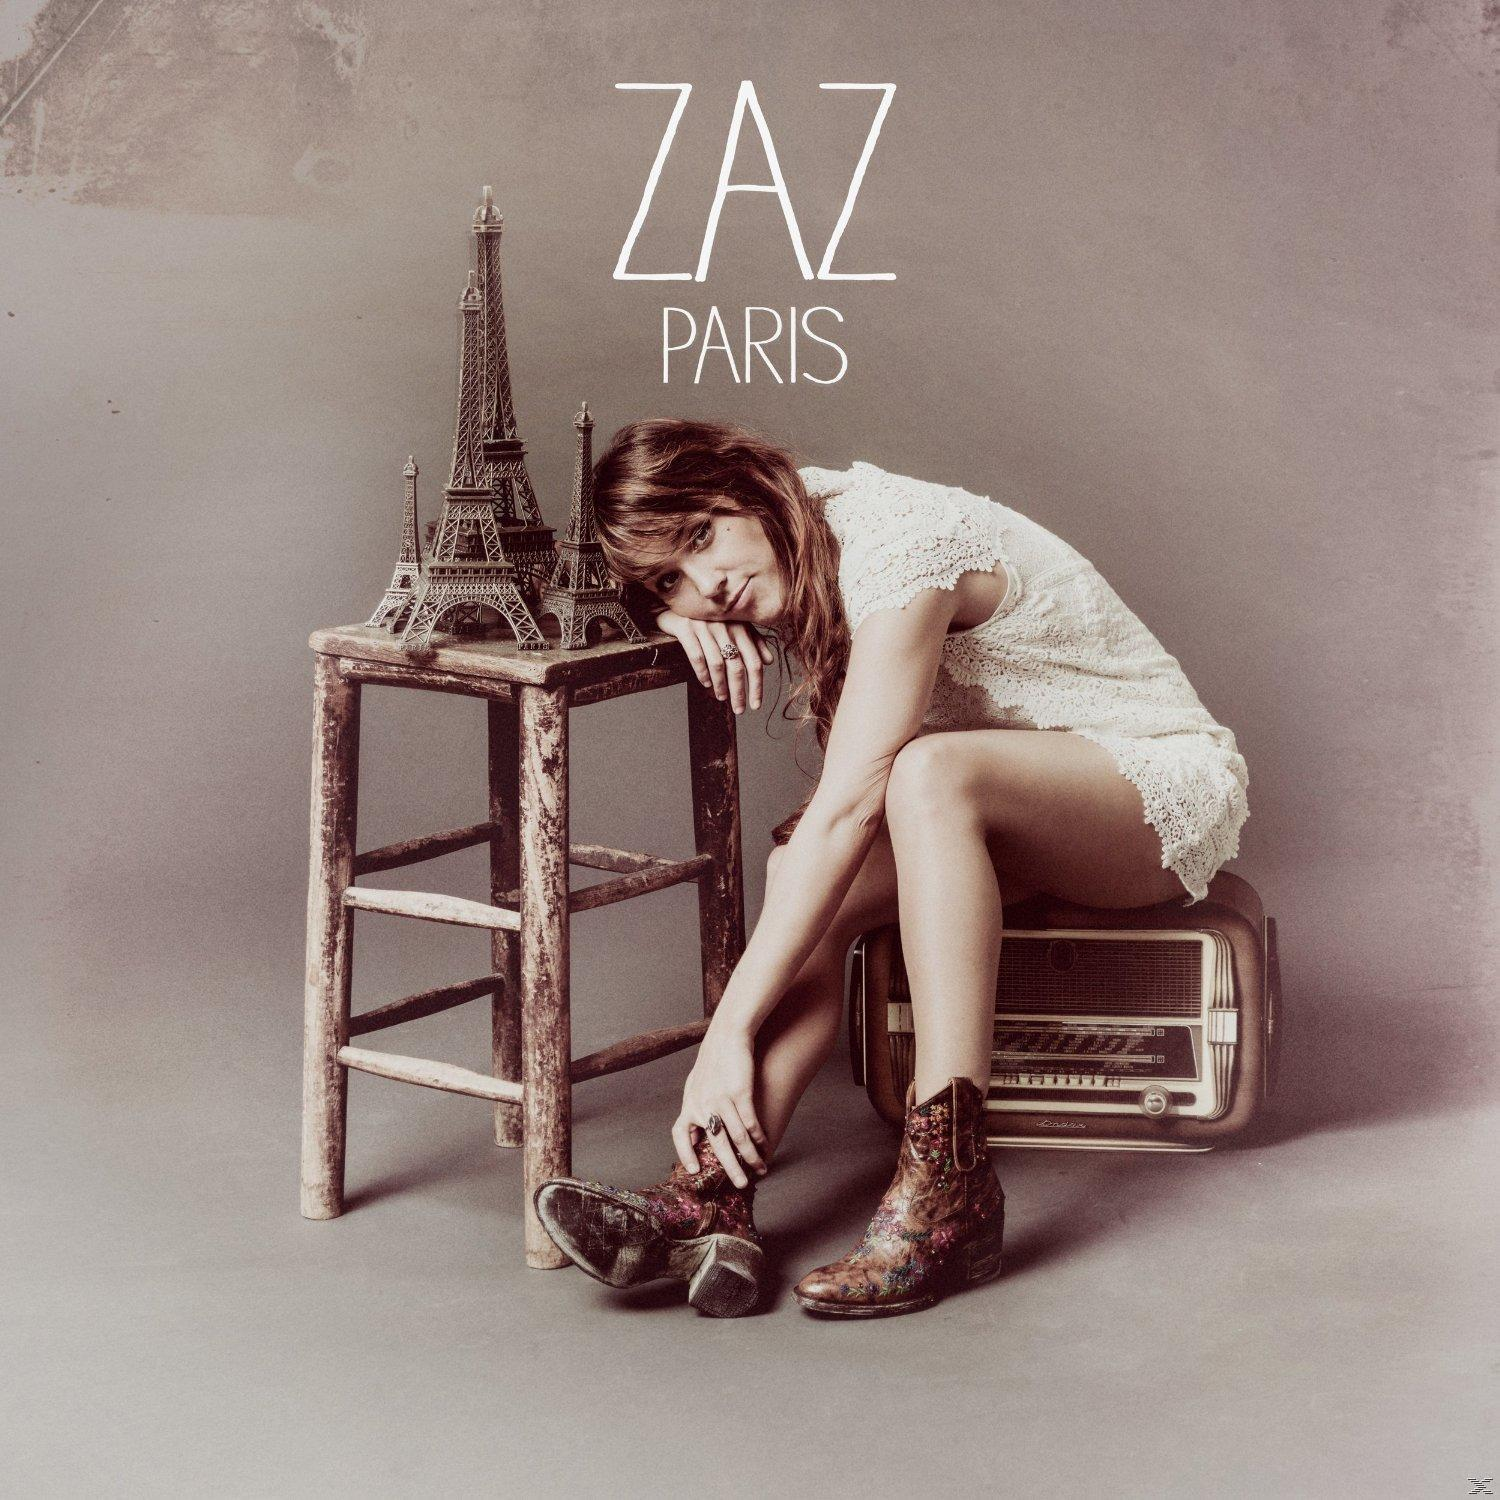 Zaz - Paris - (CD)